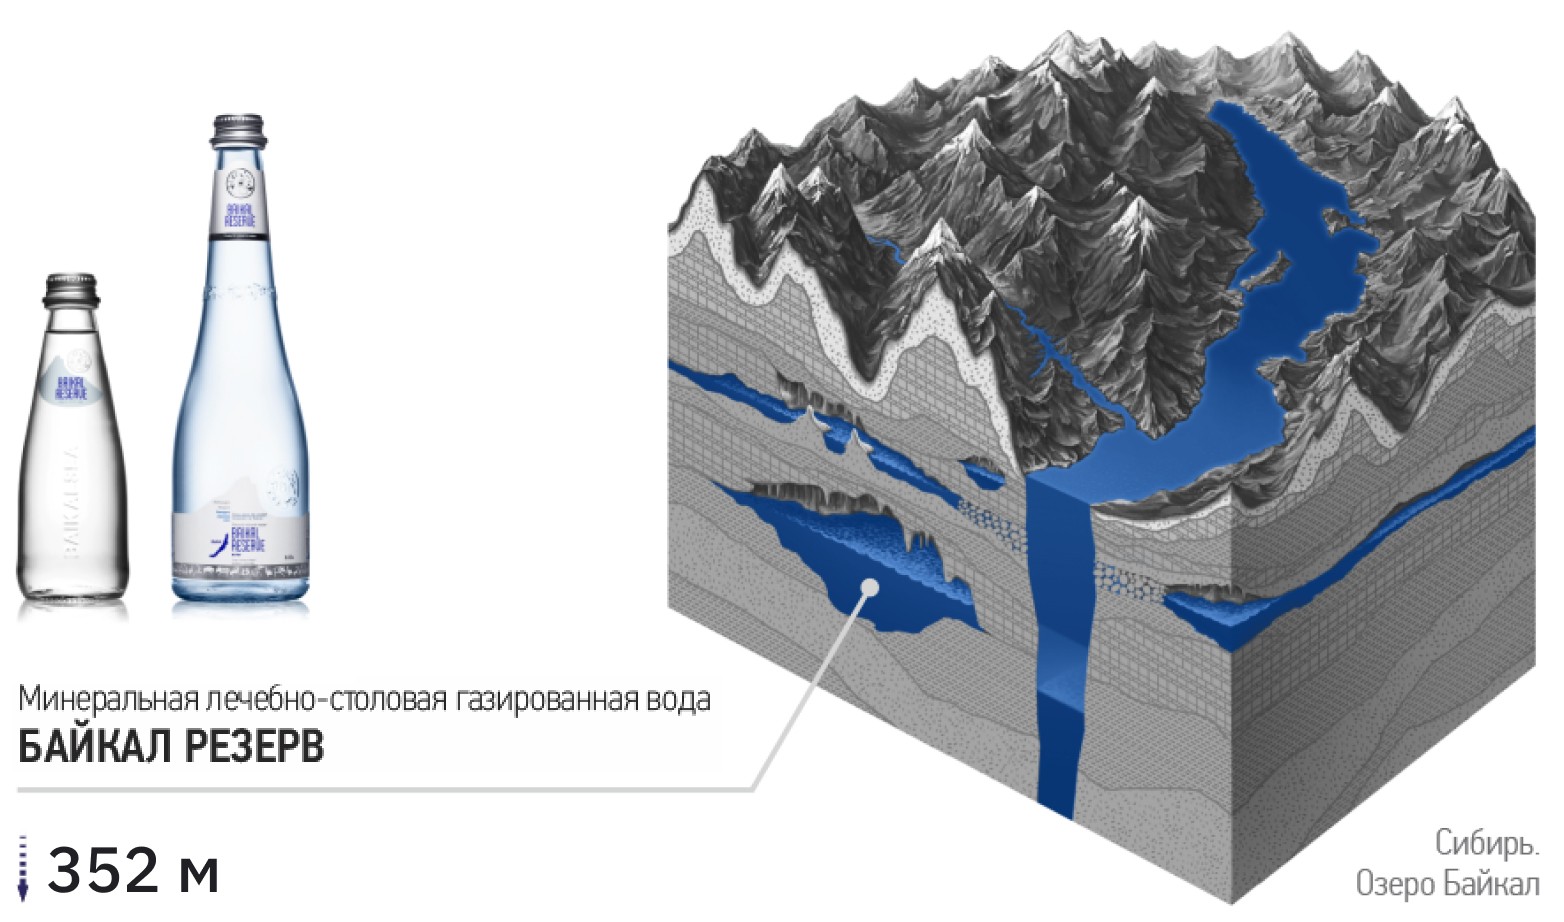 Добыча минеральной лечебно-столовой воды Байкал Резерв